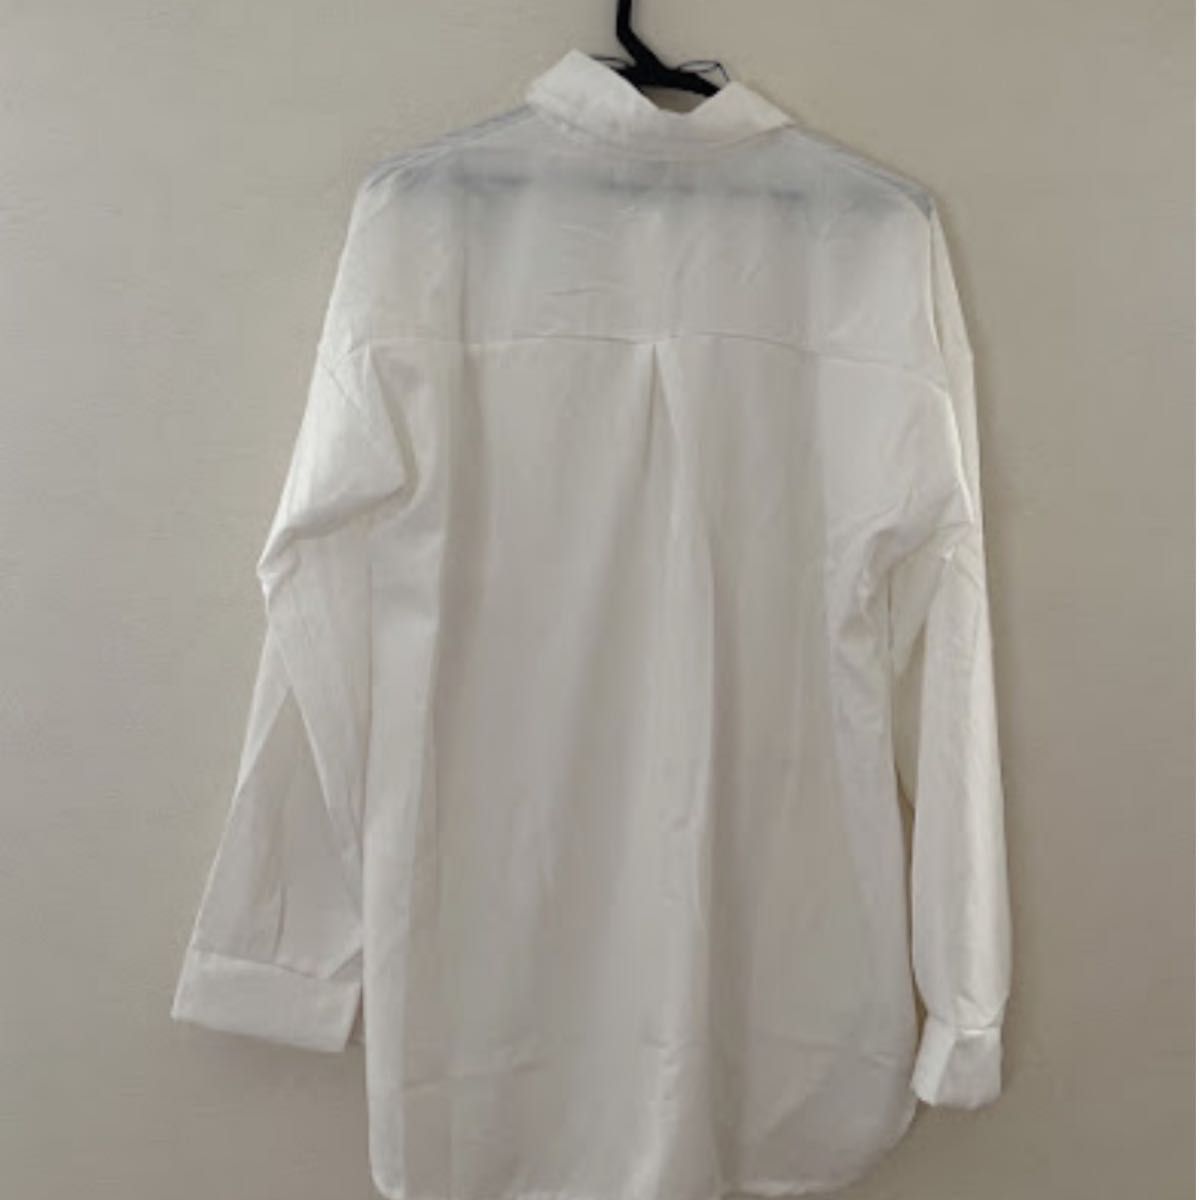 長袖 春 白シャツ 定番 レディース 無地 オーバーサイズ ブラウス 大人気 XL